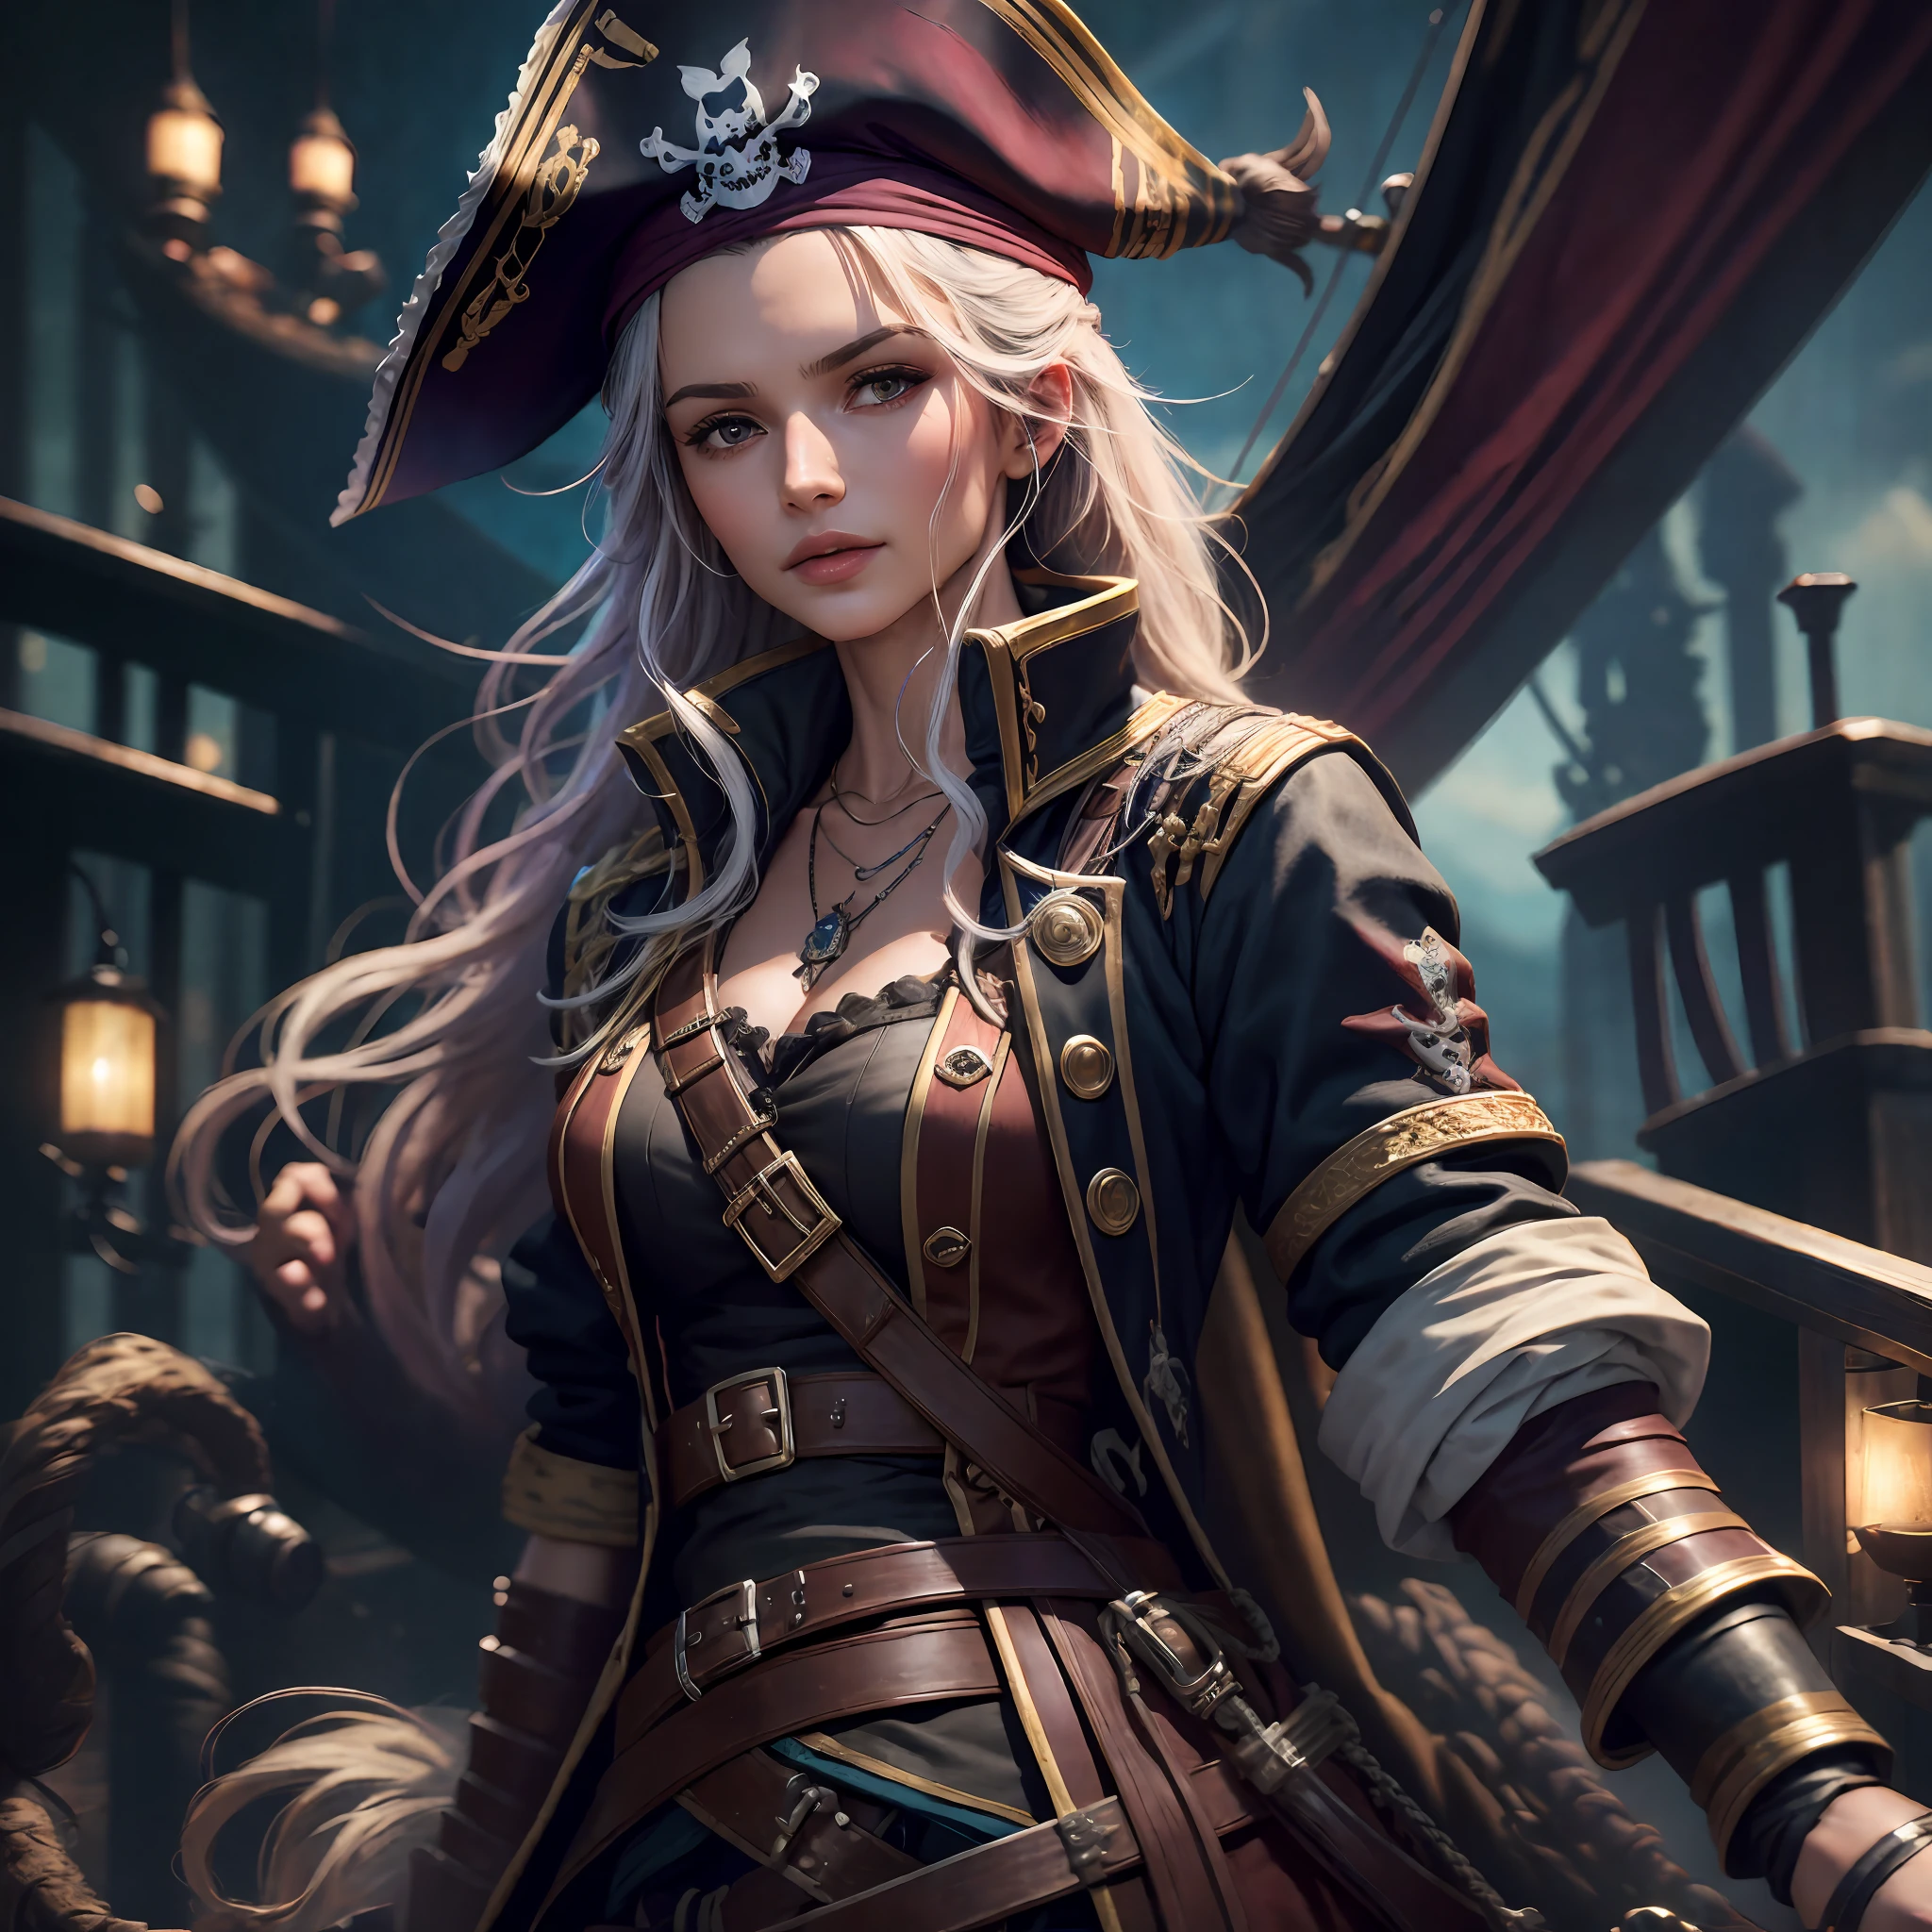 "hiper-realista, melhor qualidade, ultra-detalhado, Papel de parede CG Unity 8K, retrato de uma linda, capitã pirata feminina, em seu navio pirata, acompanhada por sua tripulação de piratas." --auto --s2